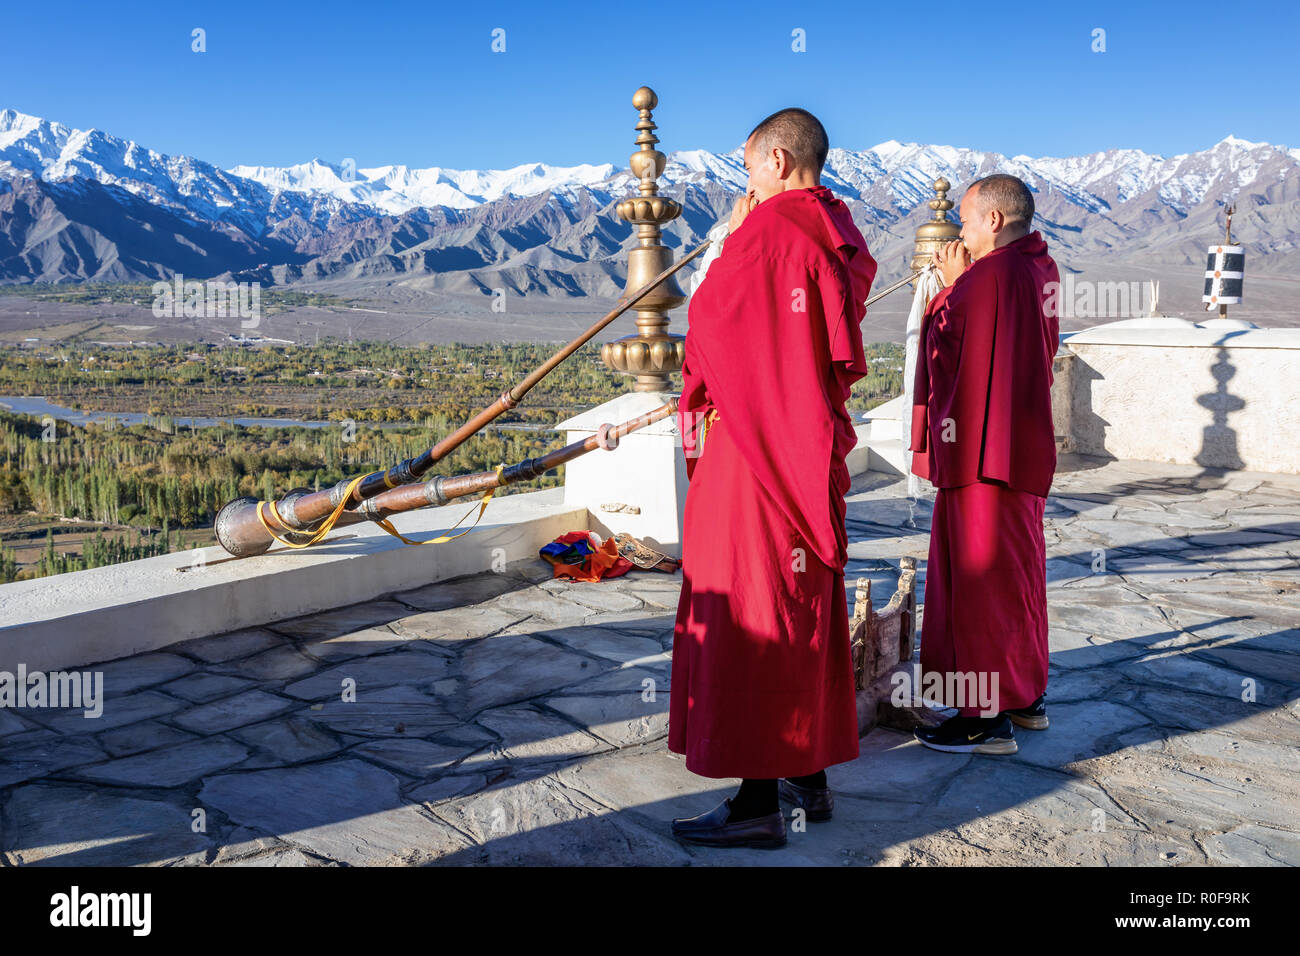 Moines bouddhistes jouant des cornes tibétaines au monastère de Thikse (Thiksay Gompa), Ladakh, Inde Banque D'Images